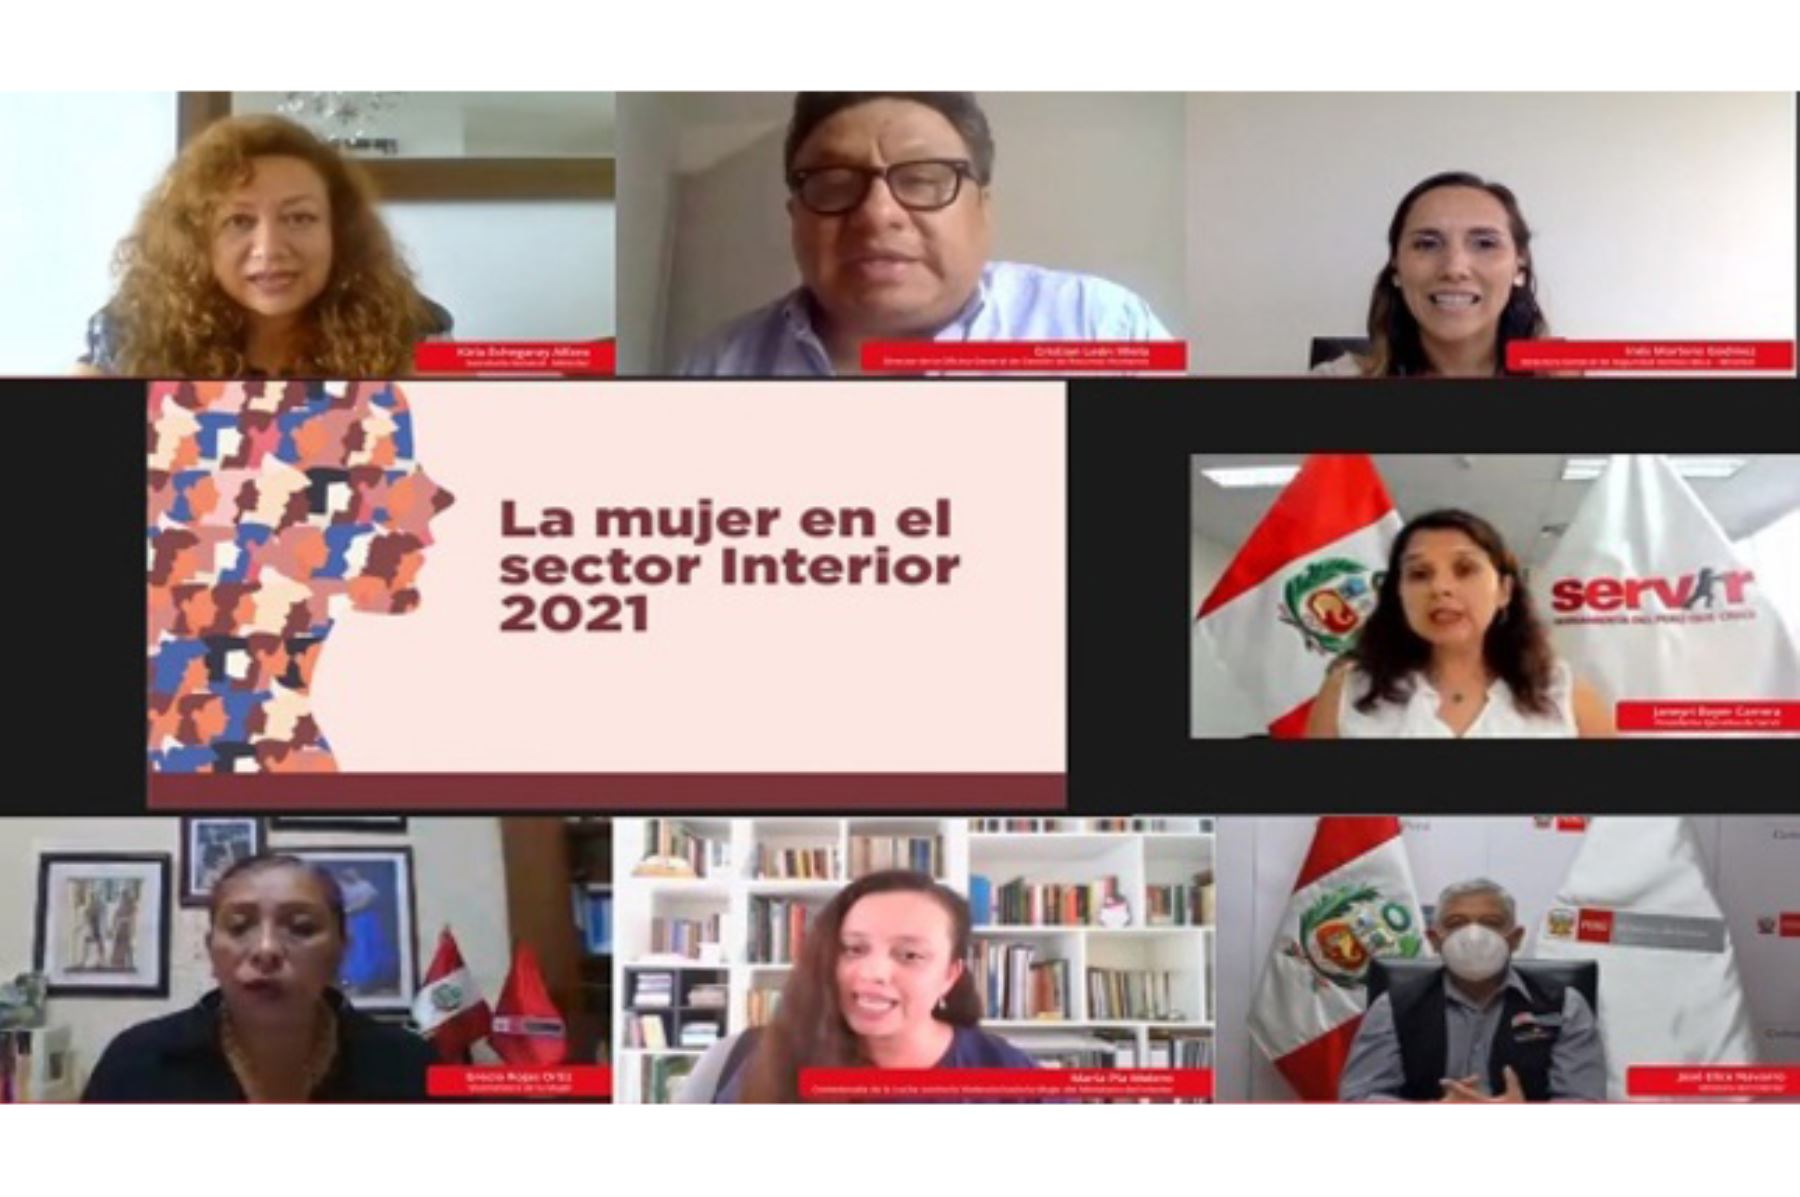 El Ministerio del Interior organizó un conversatorio virtual para presentar el documento "La mujer en el sector Interior 2021". Foto: ANDINA/Mininter.